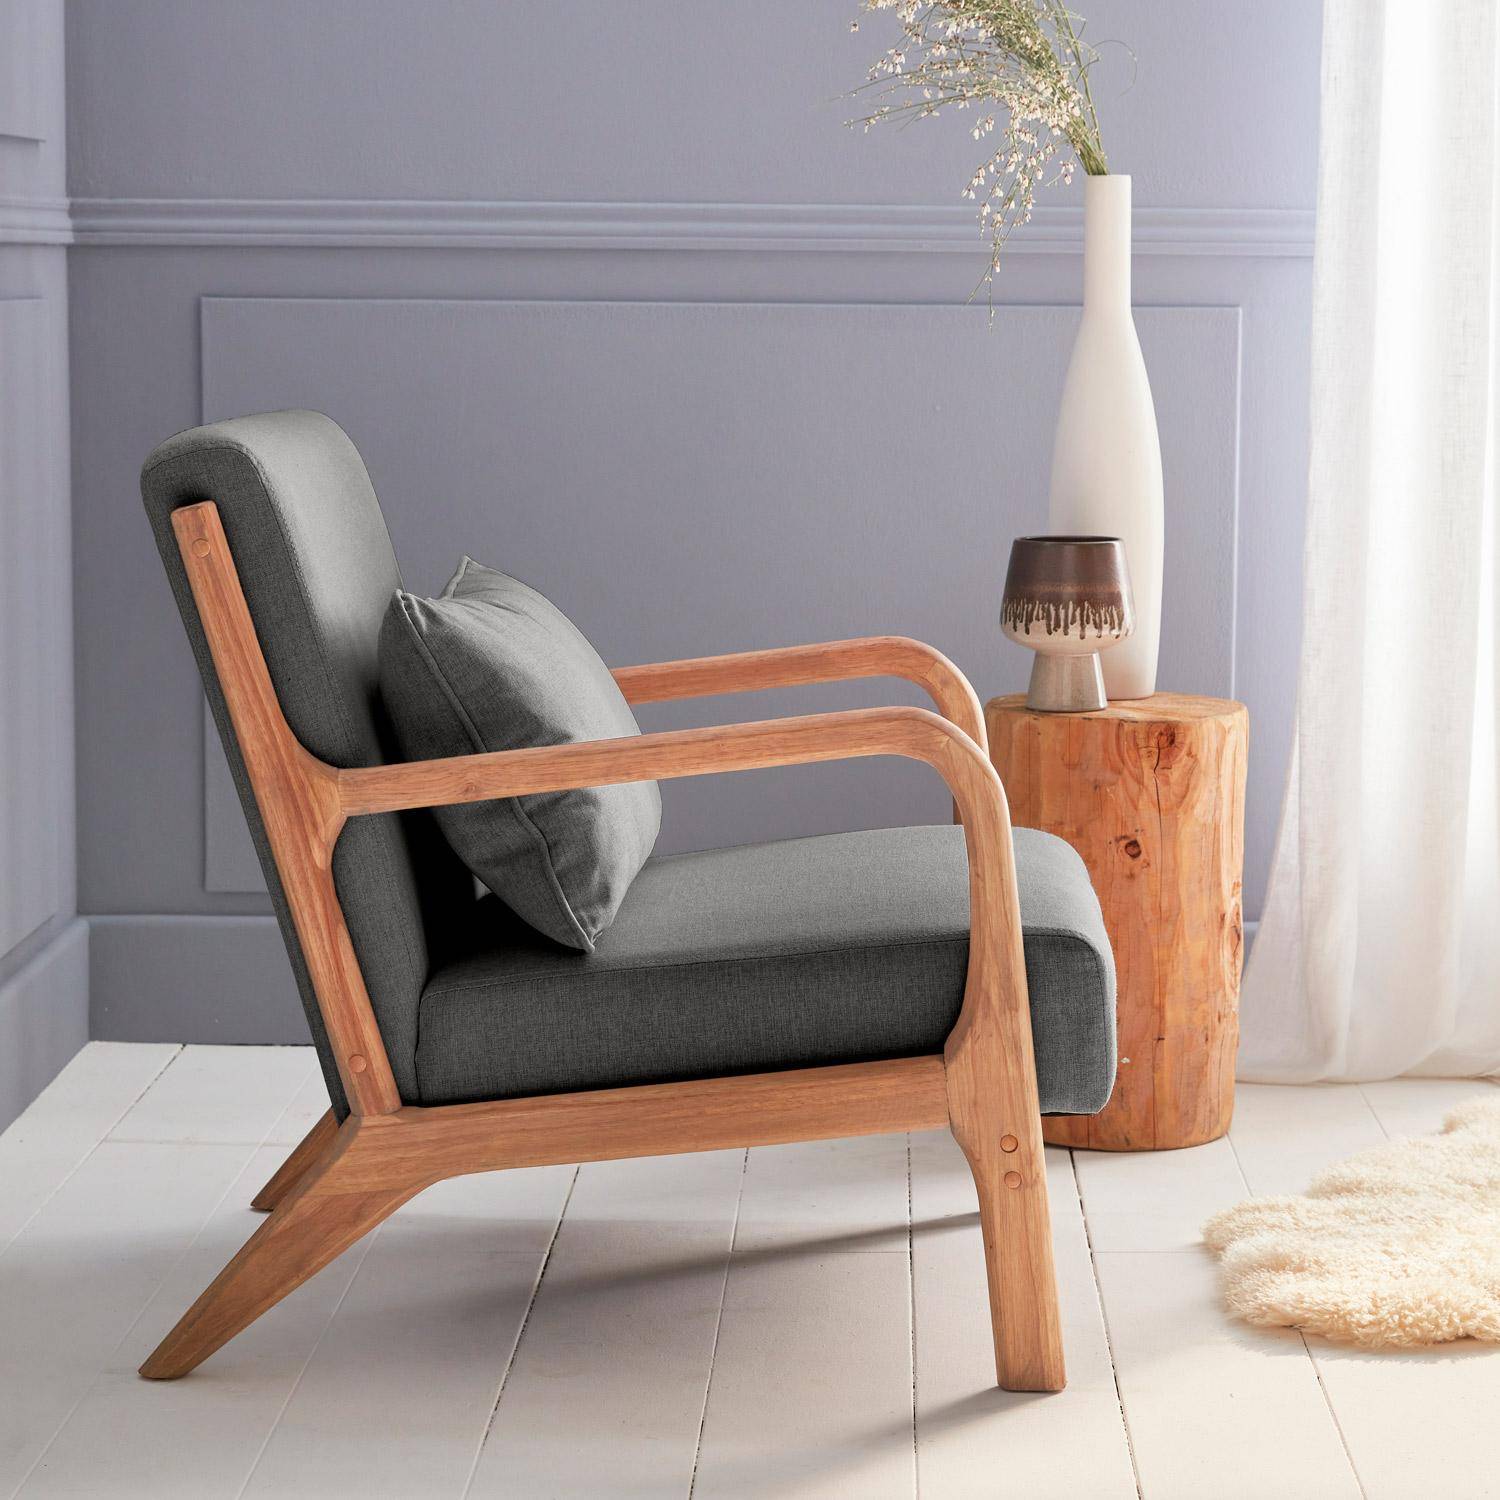 Poltrona de design em madeira e tecido, 1 assento direito fixo, pernas em bússola escandinavas, estrutura em madeira maciça, assento confortável, cinzento escuro,sweeek,Photo2